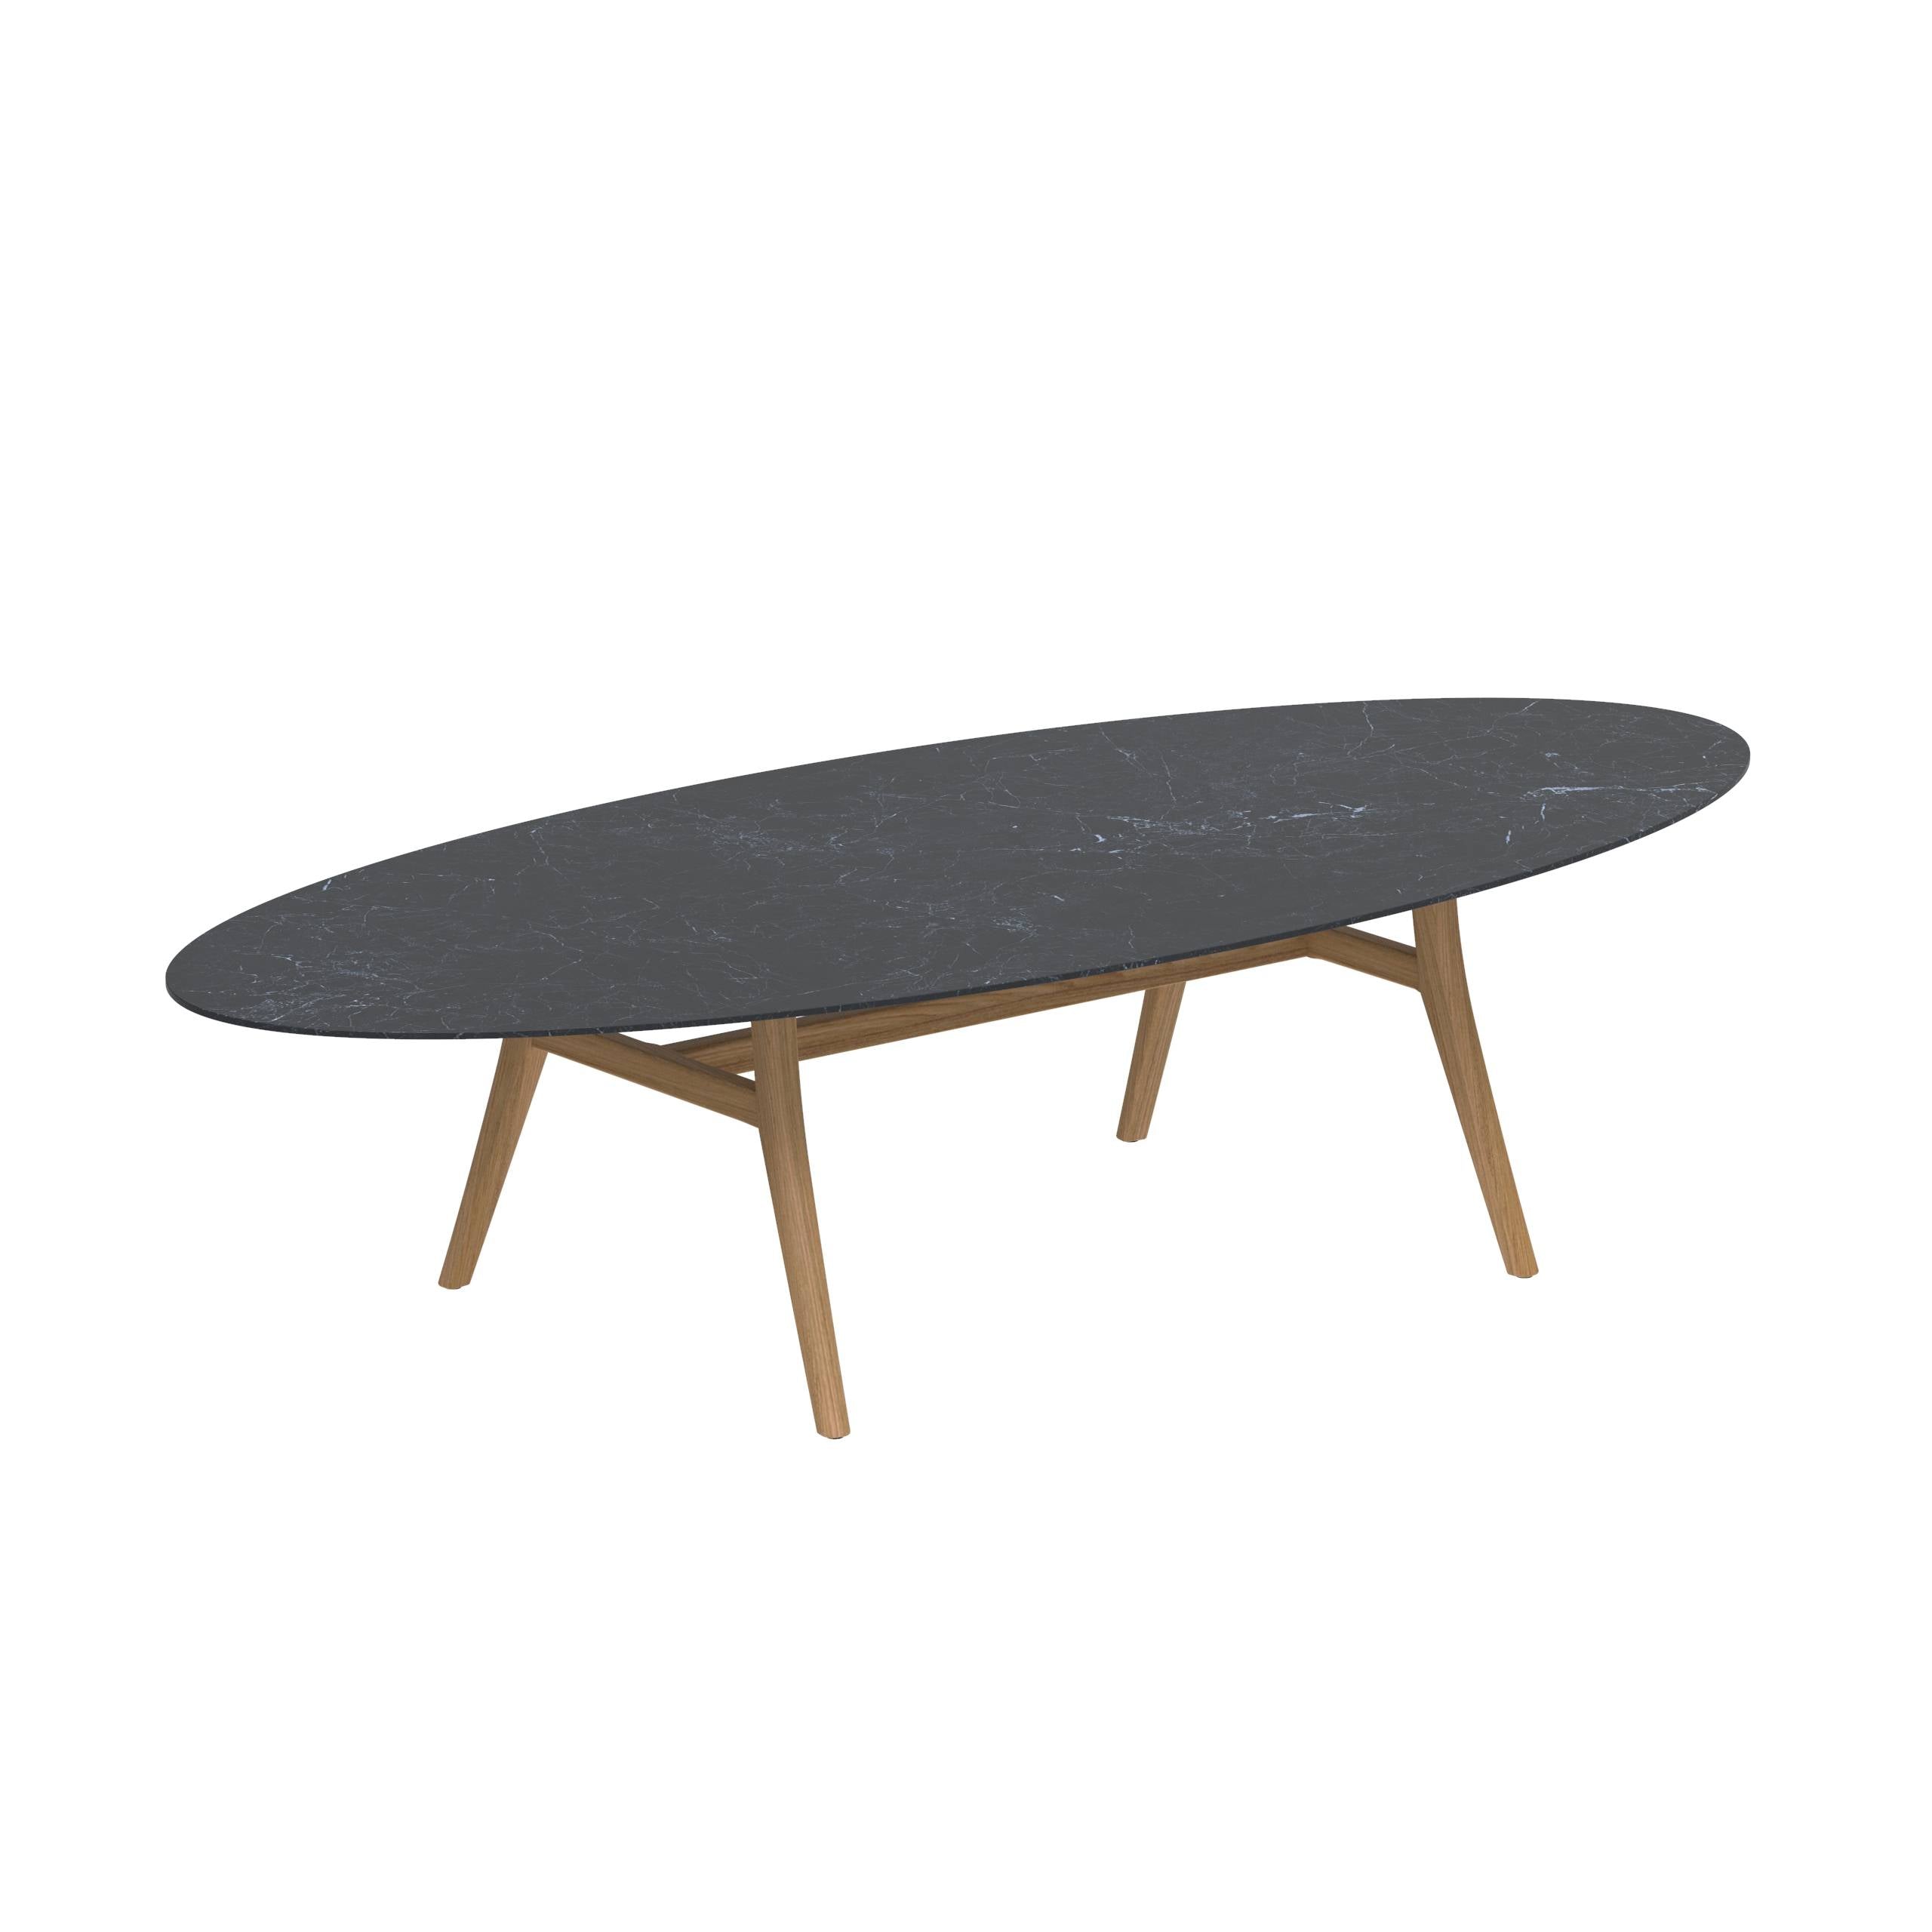 Zidiz Table 320x140cm Teak Legs - Ceramic Table Top Nero Marquina